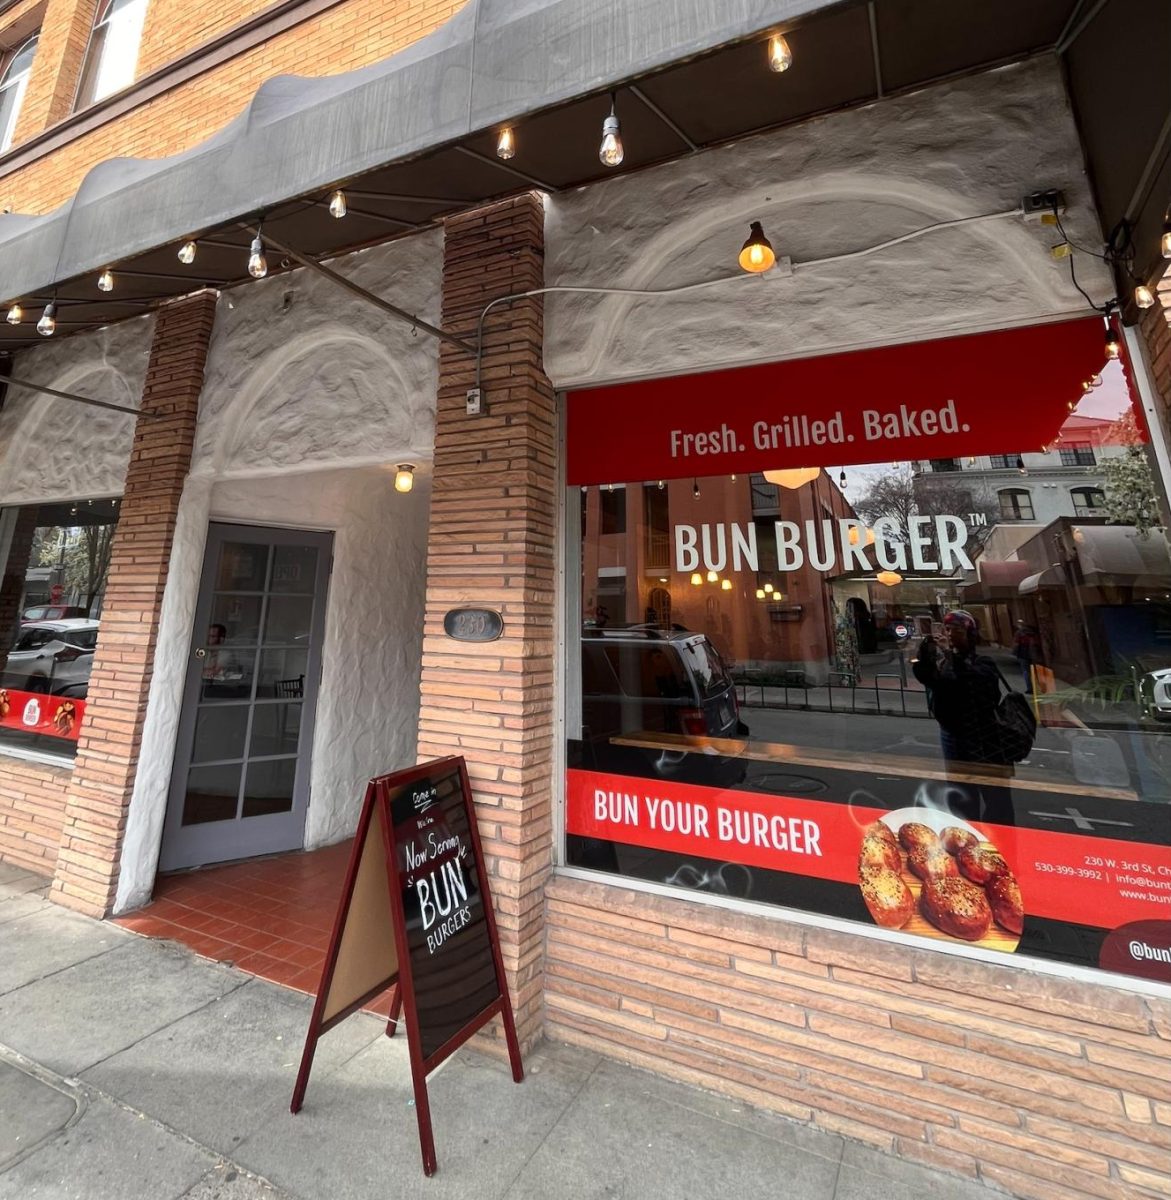 Bun Burger: Baked-to-order nostalgia